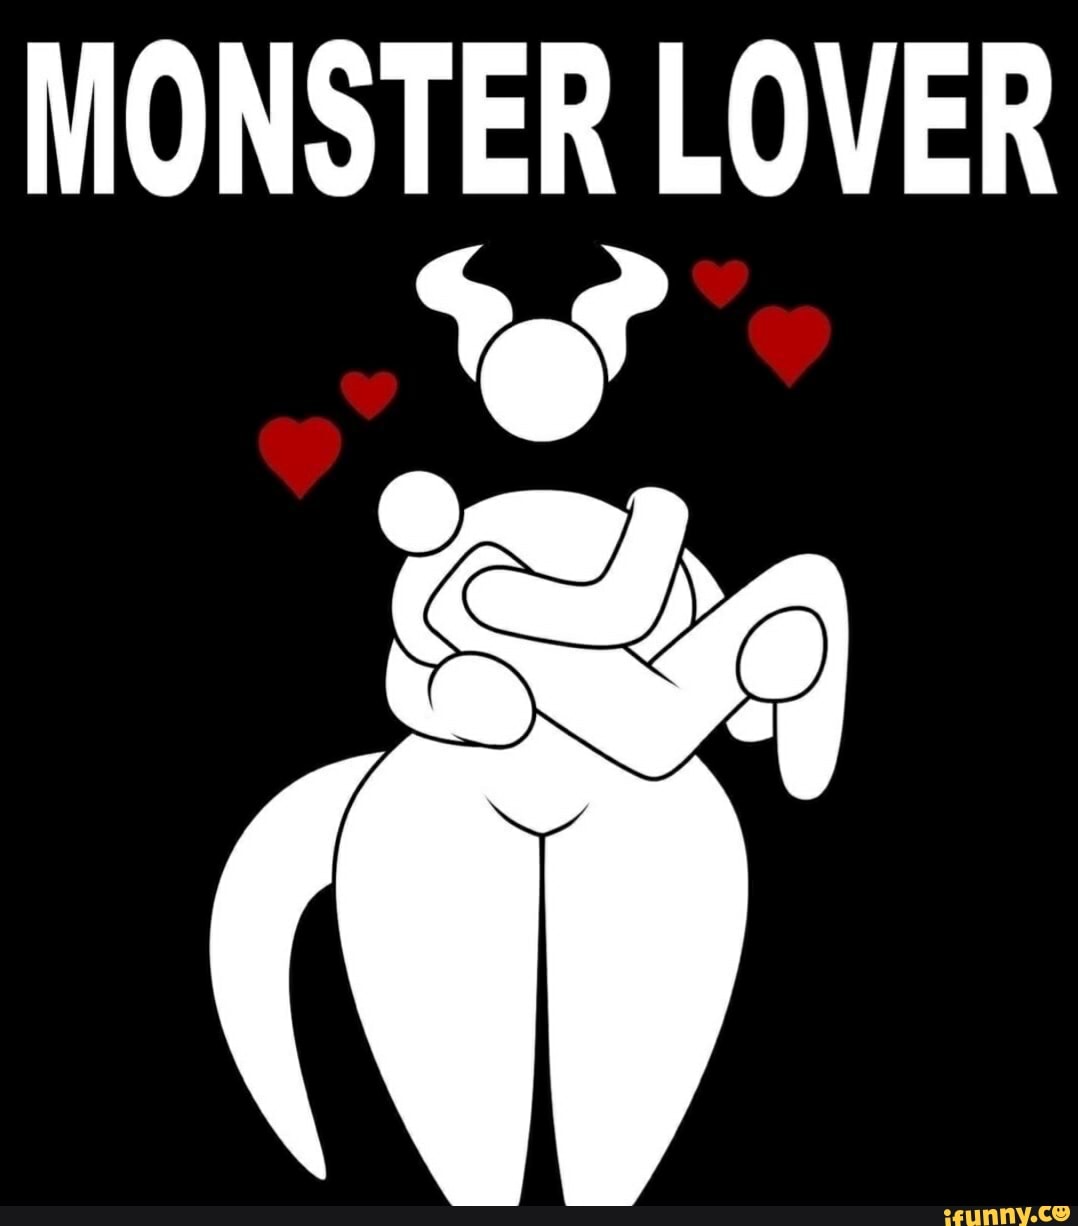 Monster Concursos on X: Chega logo, aprovação! 🙌🏽😂 #monsterconcursos  #meme #concurseiros #estudaquepassa #boramudardevida #aquiemonster #rir  #humor #vidadeconcurseiro  / X